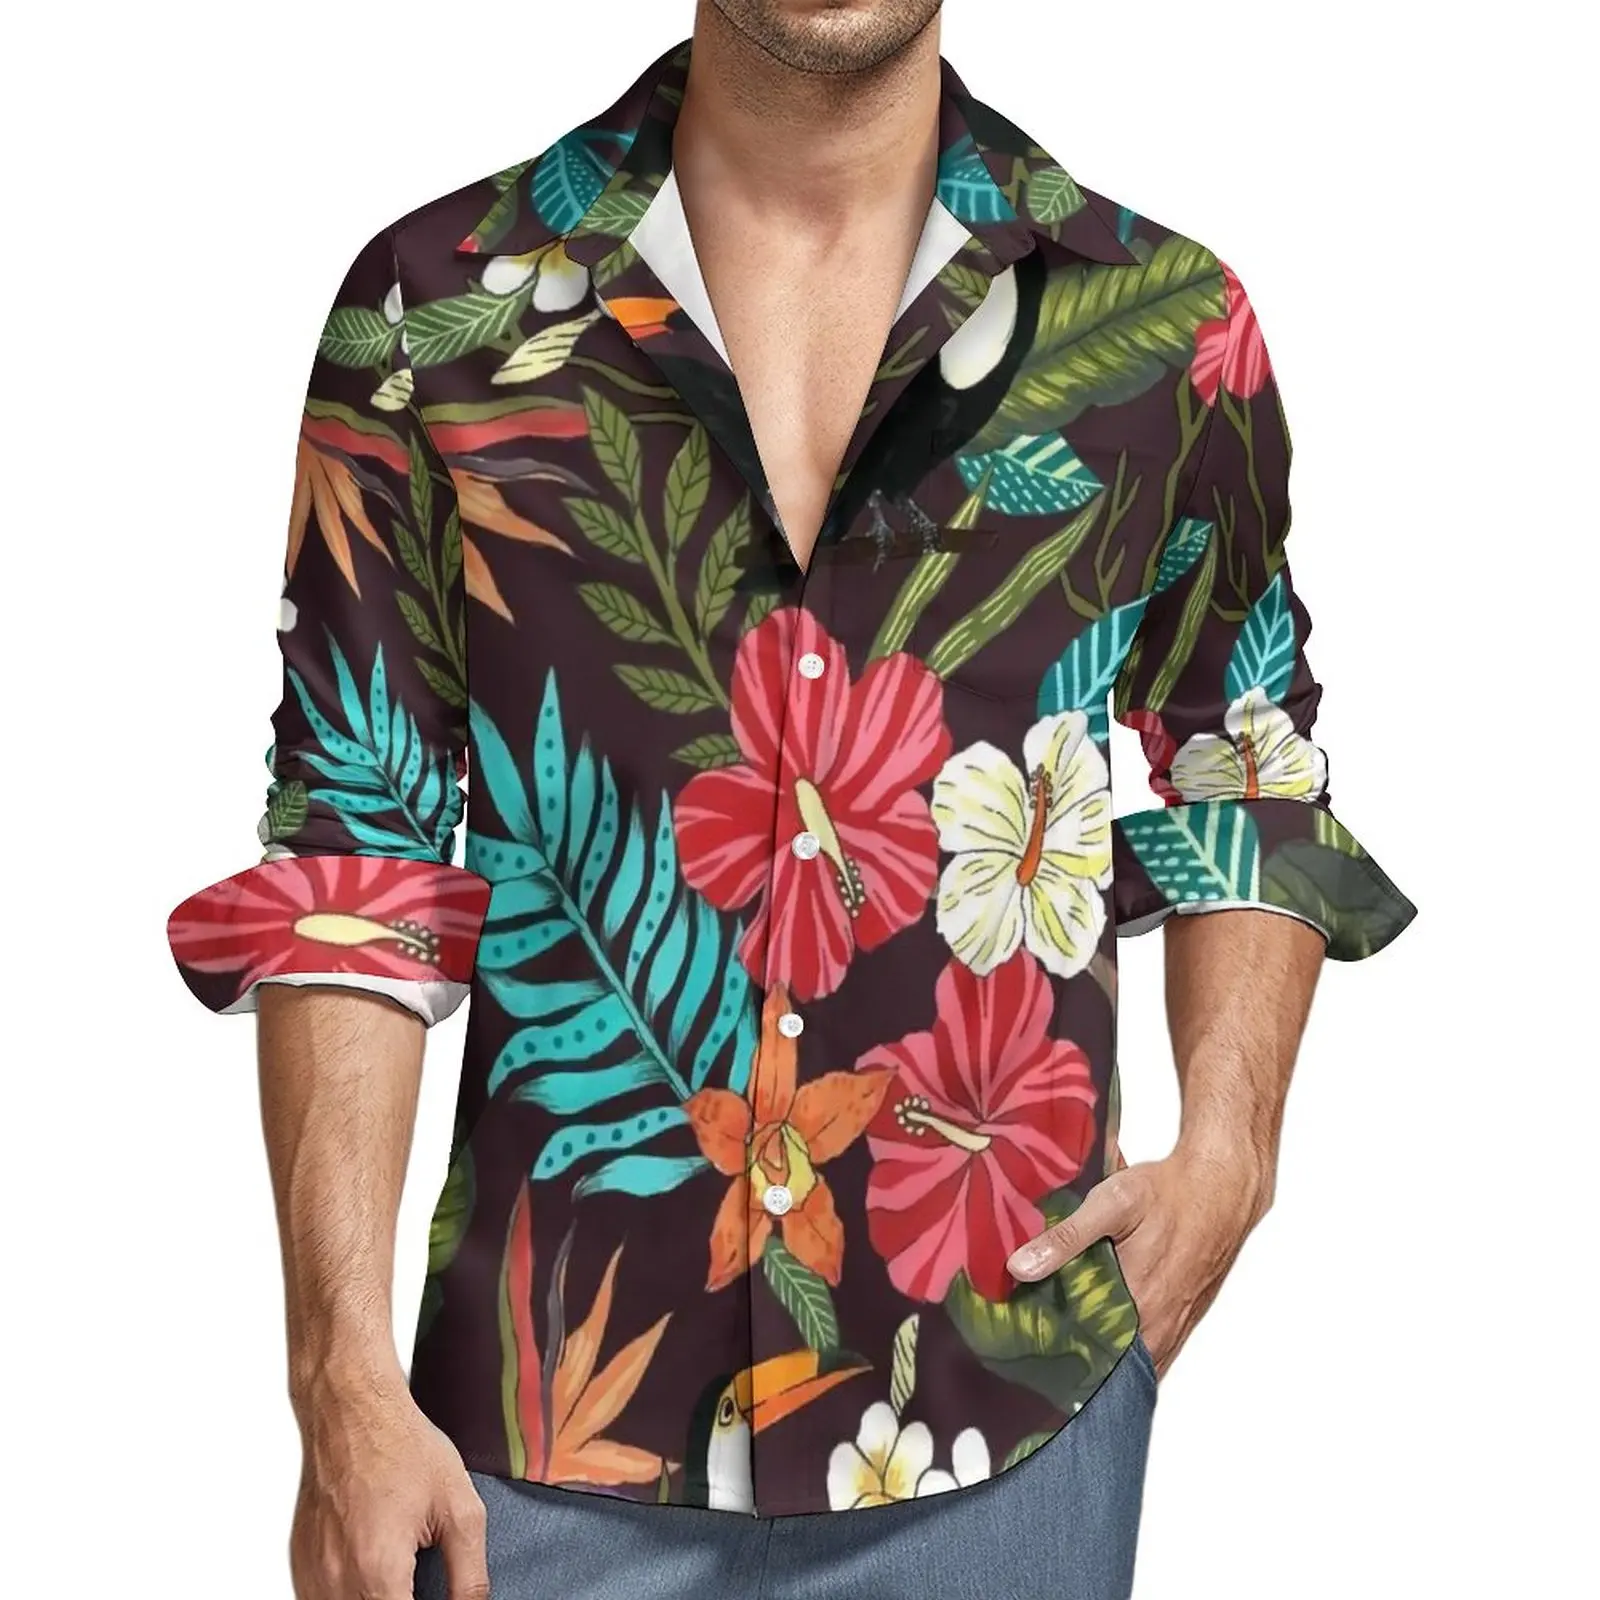 

Рубашка с цветным цветочным принтом, Повседневная Блузка с тропическим цветочным принтом, с птичьими листьями, дизайнерские стильные блузки с длинным рукавом, Осенний Свободный Топ оверсайз